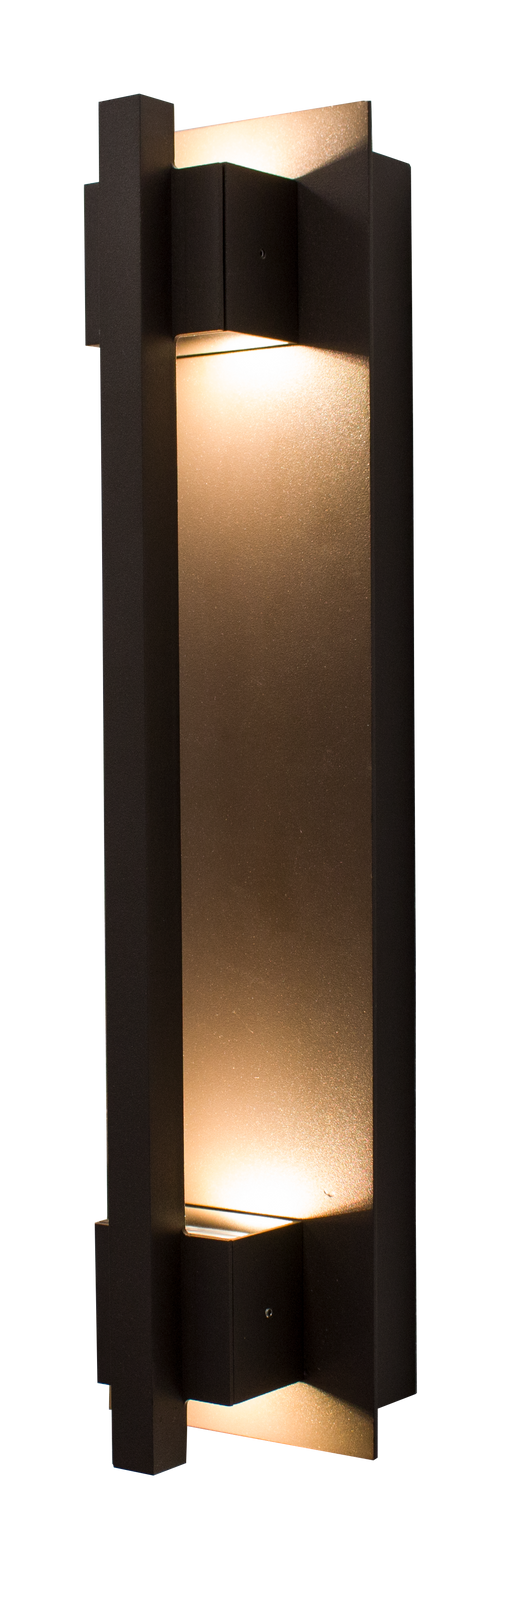 Westgate Manufacturing Crest By Westgate LED Wall Mount Sconces 900Lm 4000K 120-277V Dark Bronze (CRE-03-40K-BR)